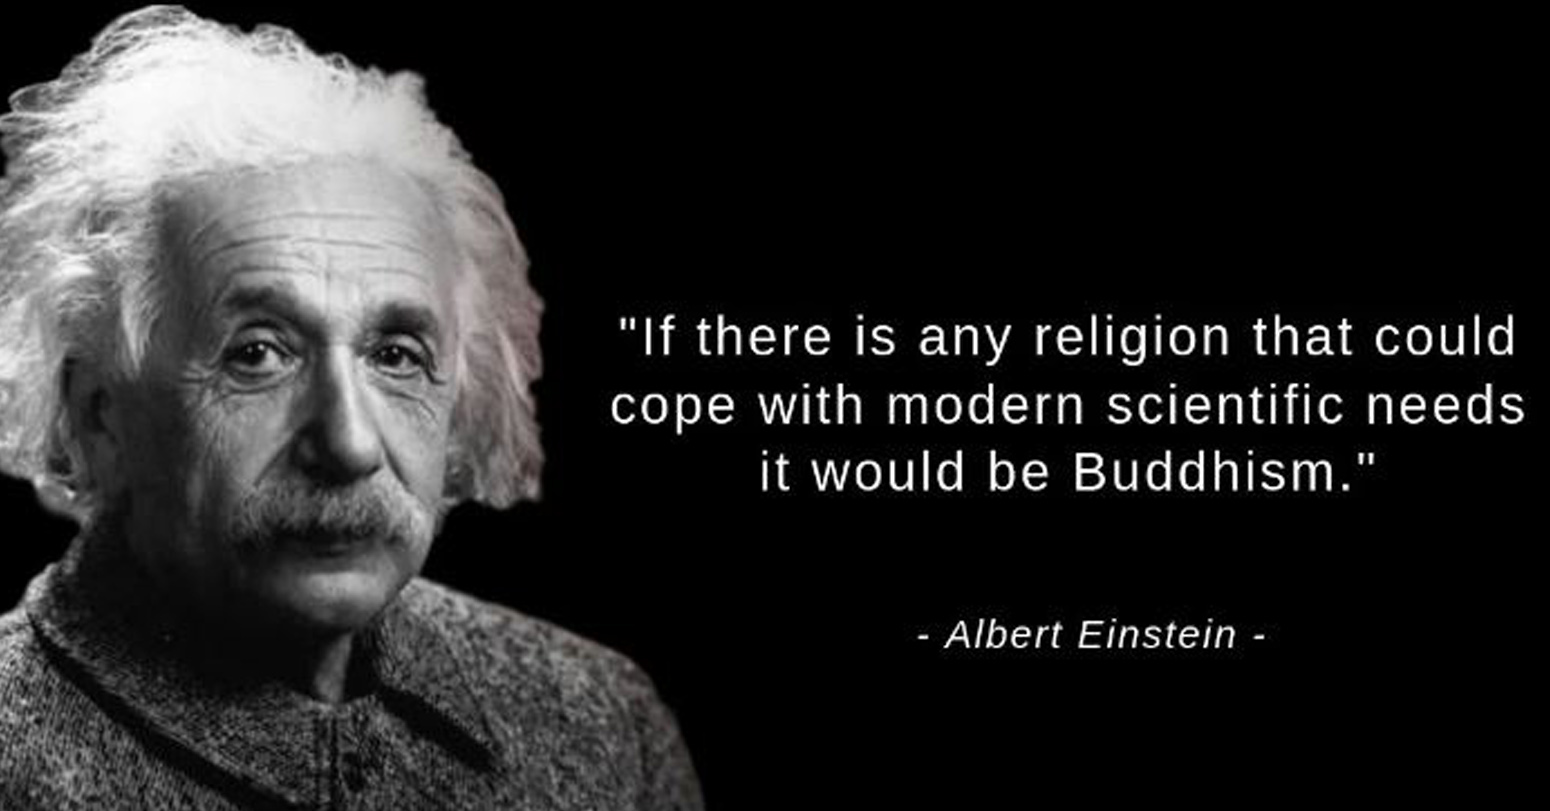 अल्बर्ट आइन्स्टाइनले भनेको थिए- ‘बौद्ध धर्म आधुनिक विज्ञानसँग जोडिएको छ’